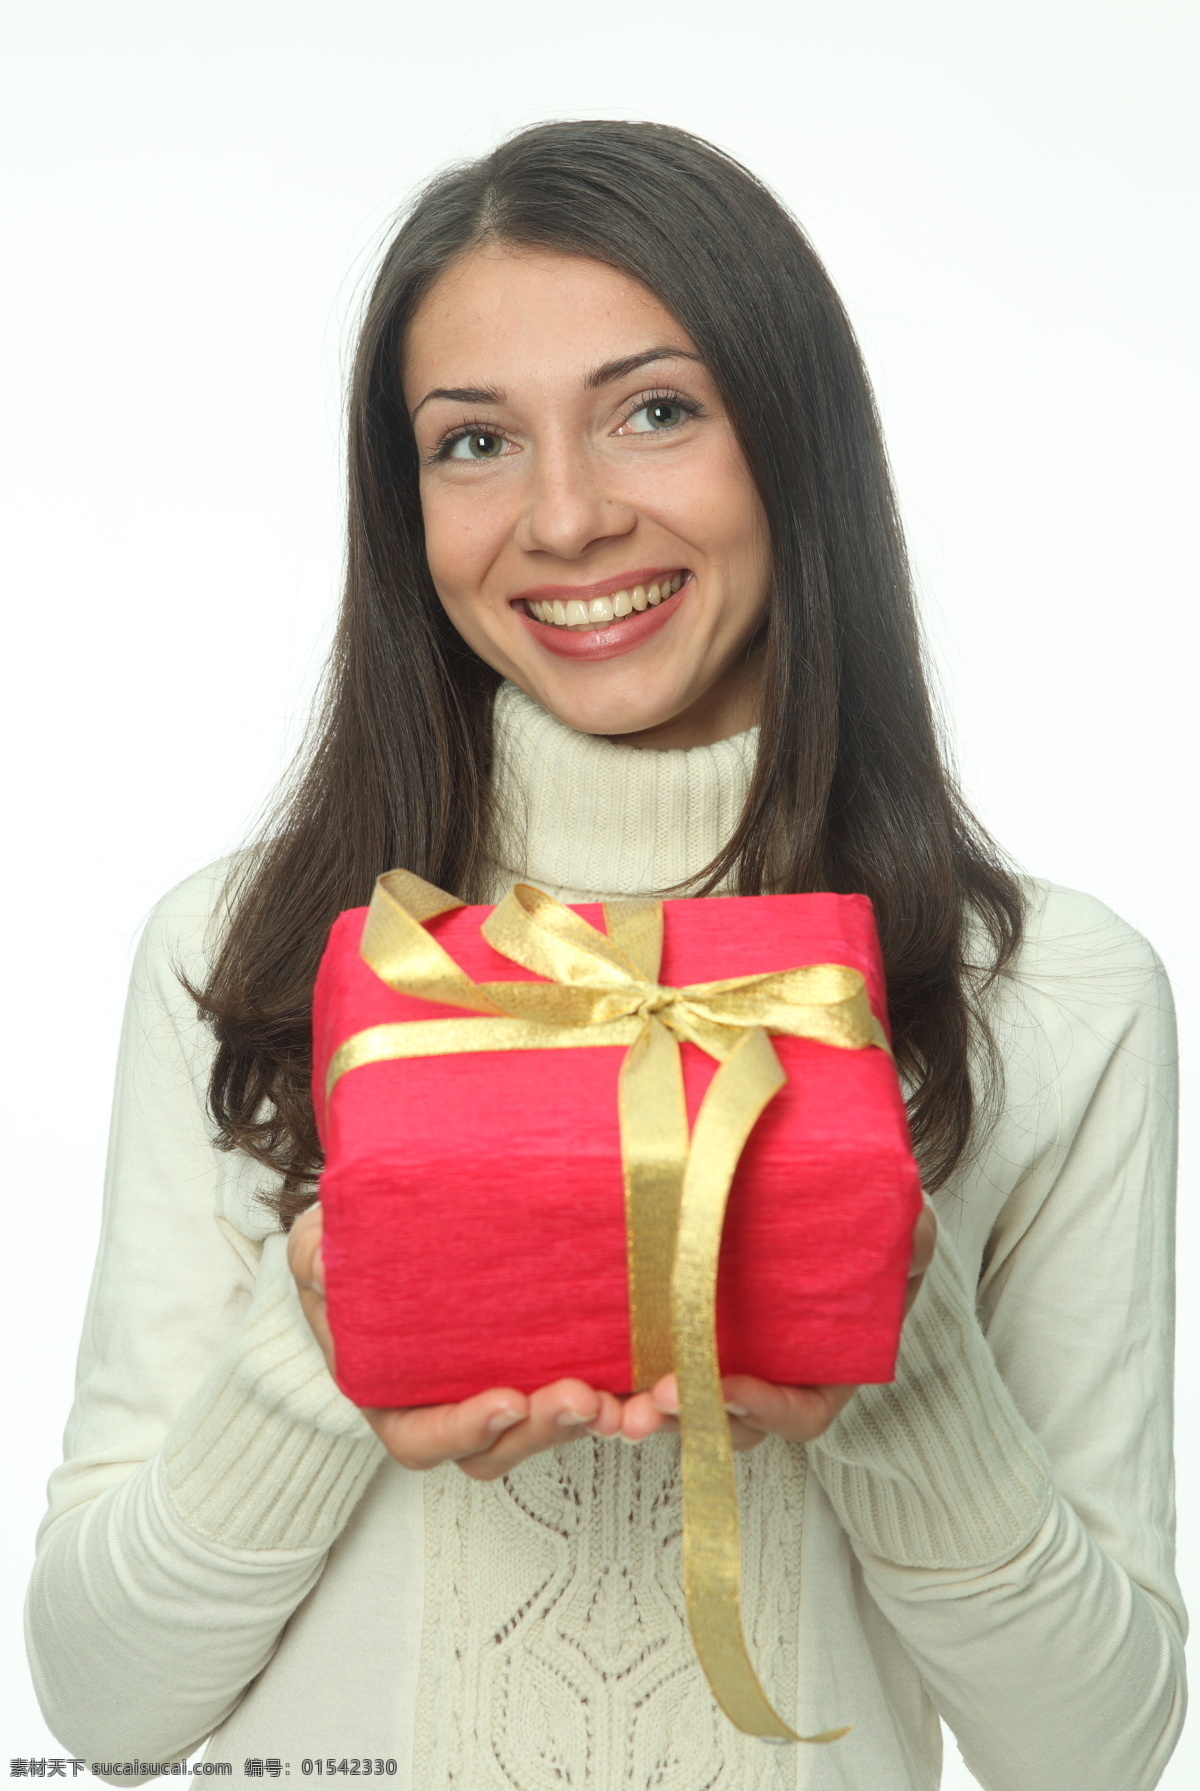 手 礼物 女孩 圣诞美女 圣诞人物 礼品 礼盒 圣诞礼物 节日 喜庆 美女图片 人物图片